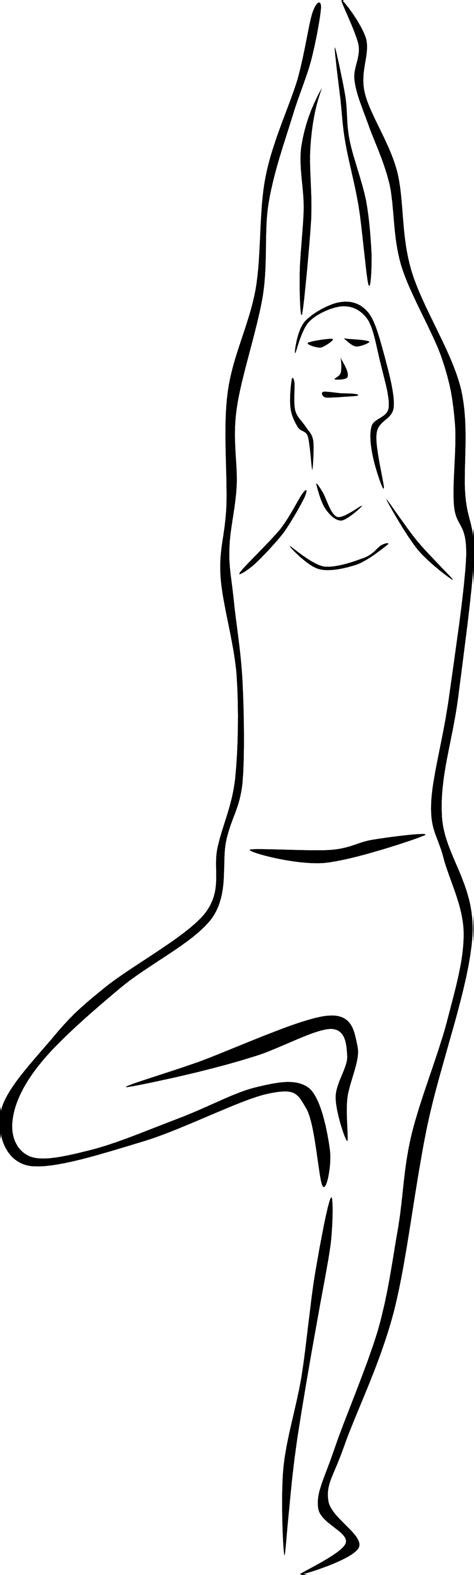 Public Domain Clip Art Image | Yoga Poses (stylized) | ID ...